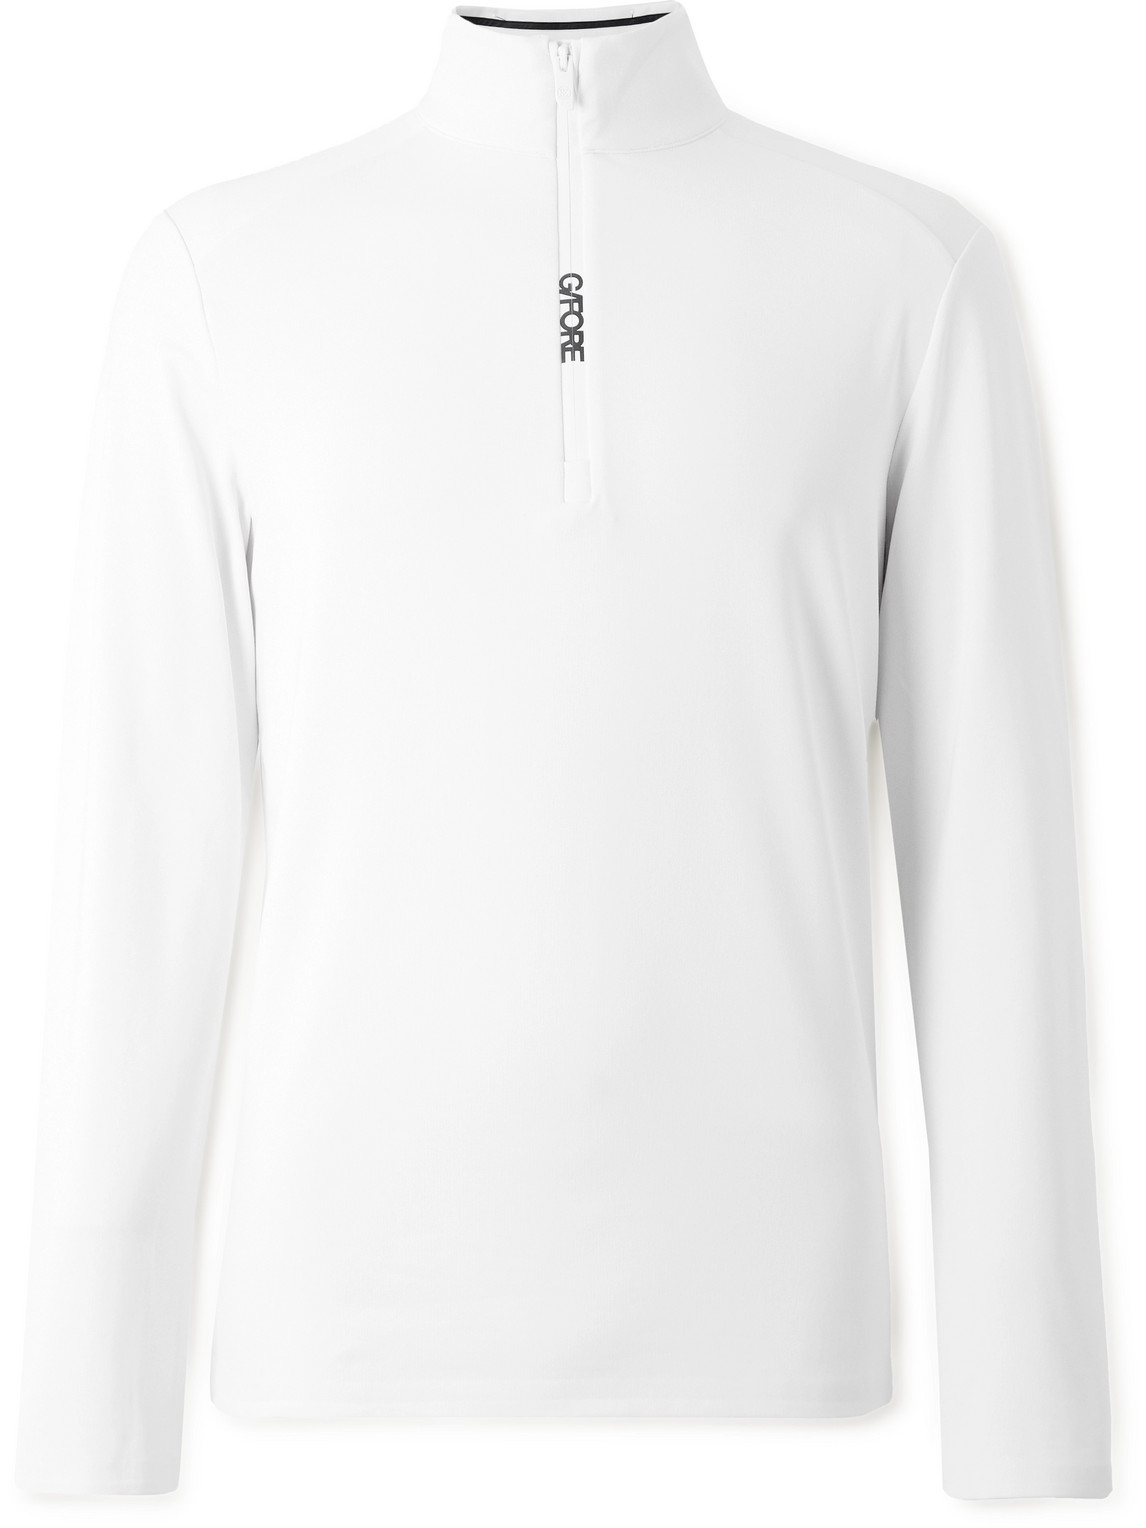 G/FORE - Tech-Jersey Golf Half-Zip Sweatshirt - Men - White - XXL von G/FORE